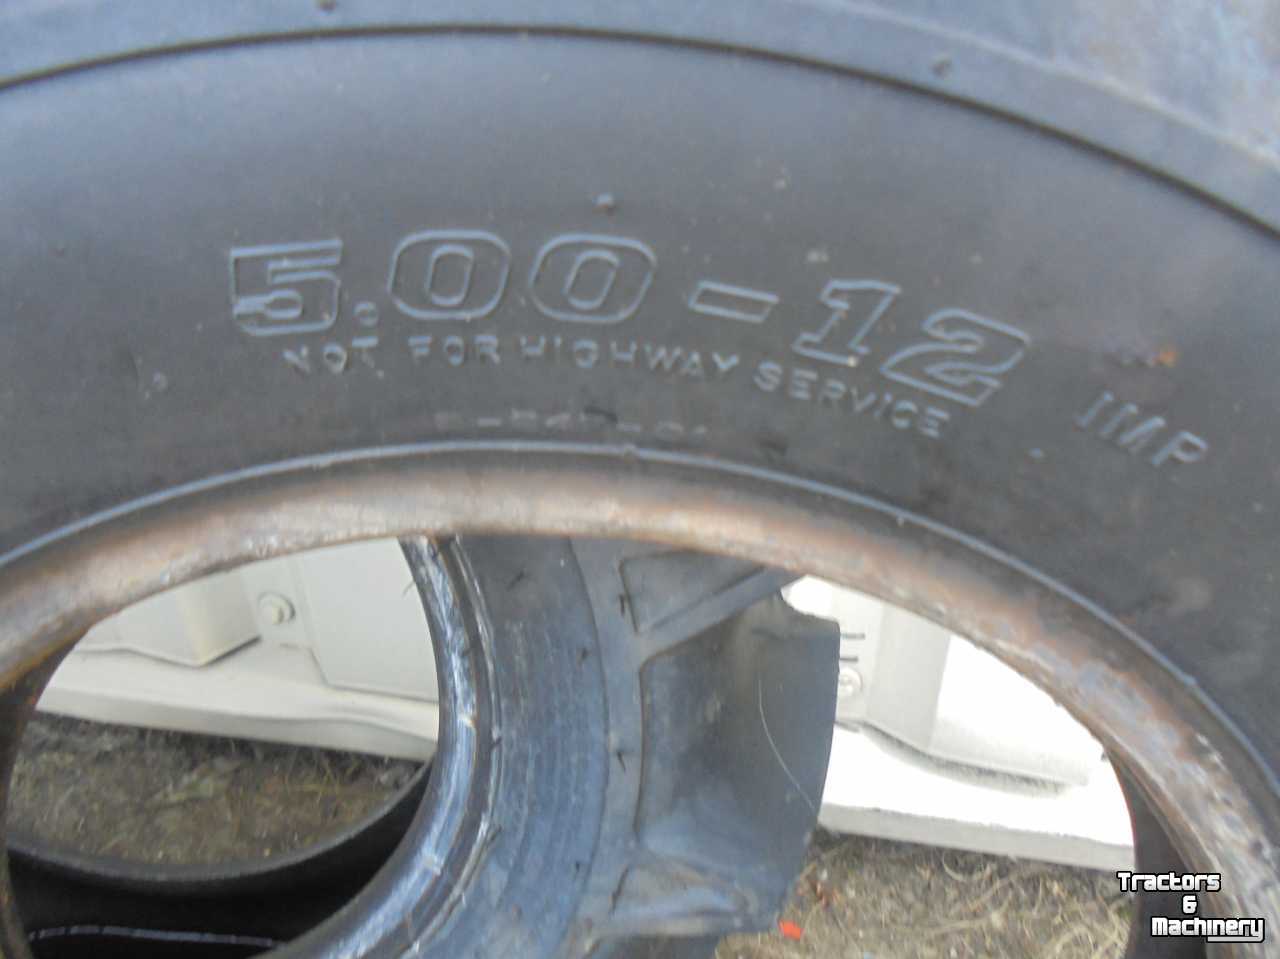 Wheels, Tyres, Rims & Dual spacers BKT 5.00-12 losse banden BKT TR171 6 ply en Deli Tire 4 ply 5.00x12